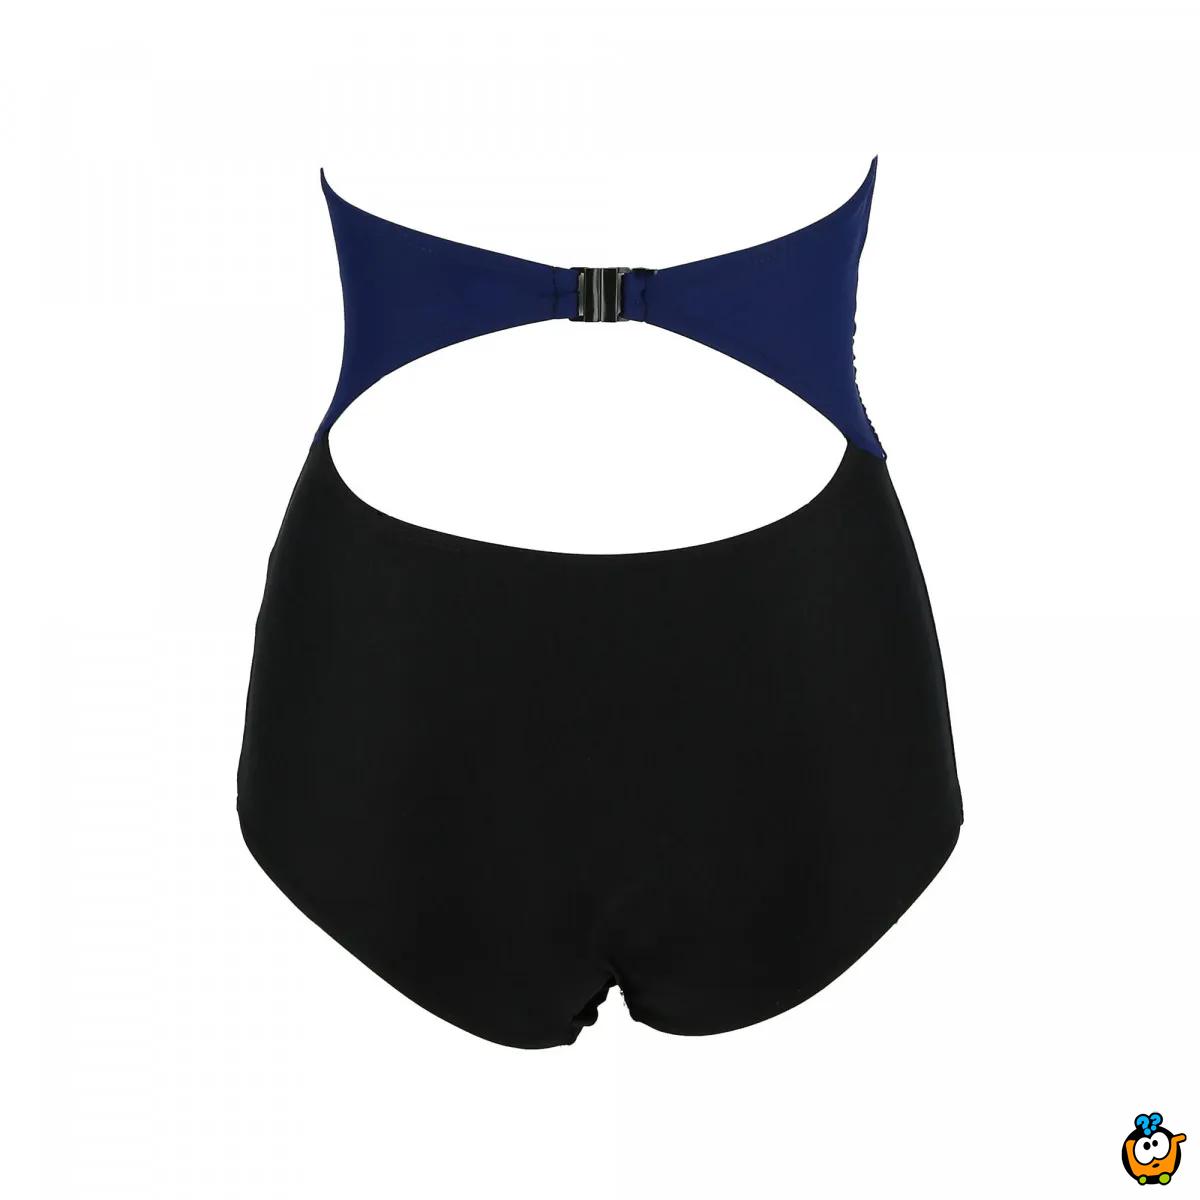 Jednodelni ženski kupaći kostim- 2TOP TIBETIAN BLUE